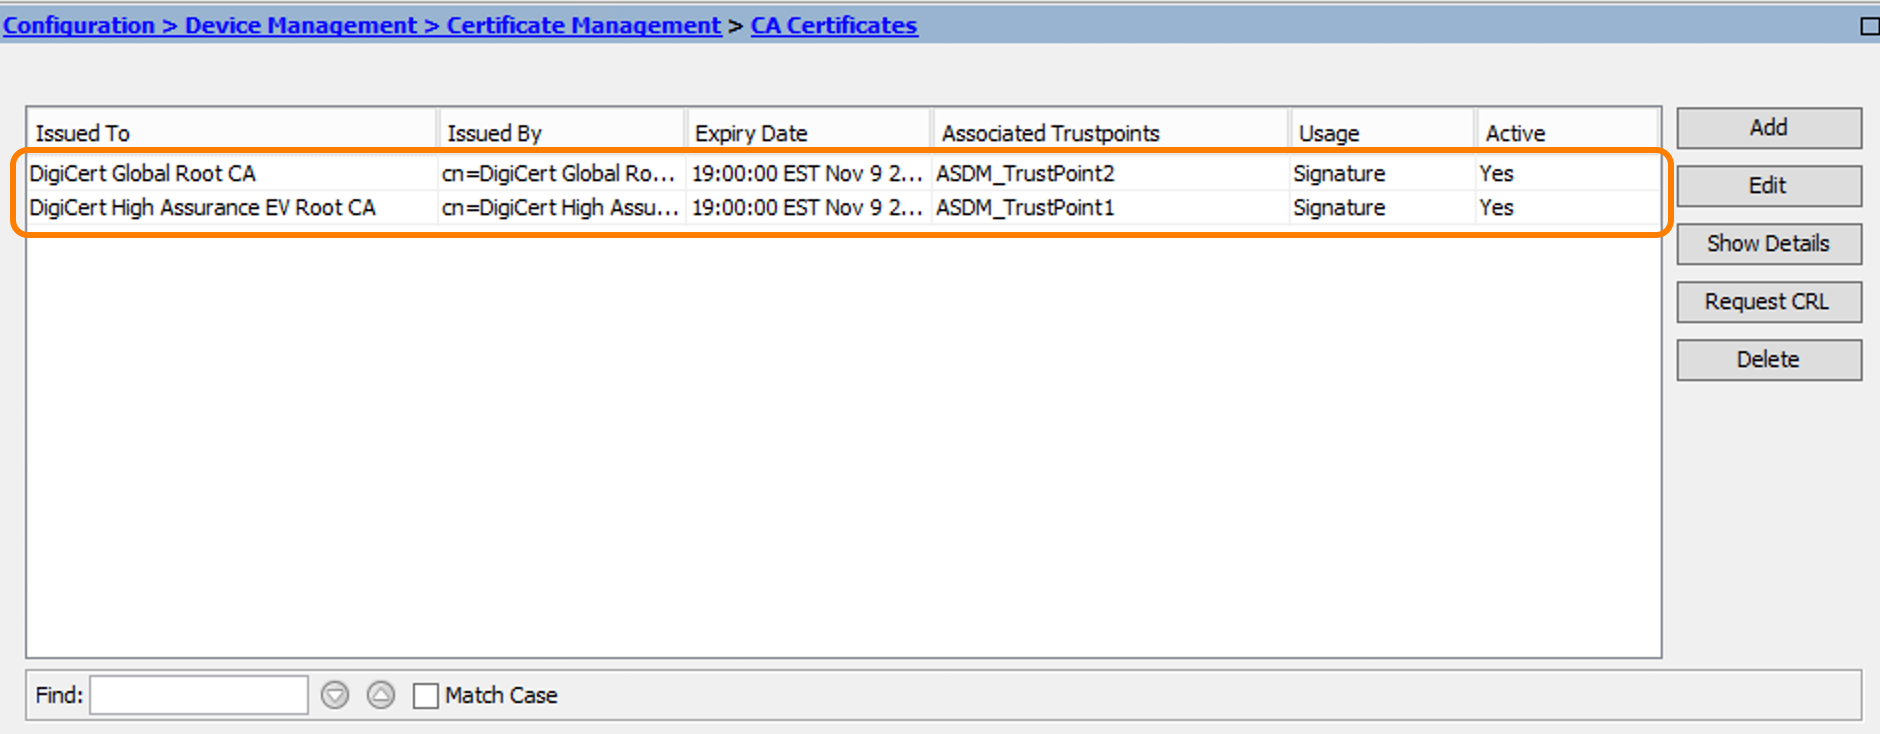 DigiCert CA Certificates in ASDM